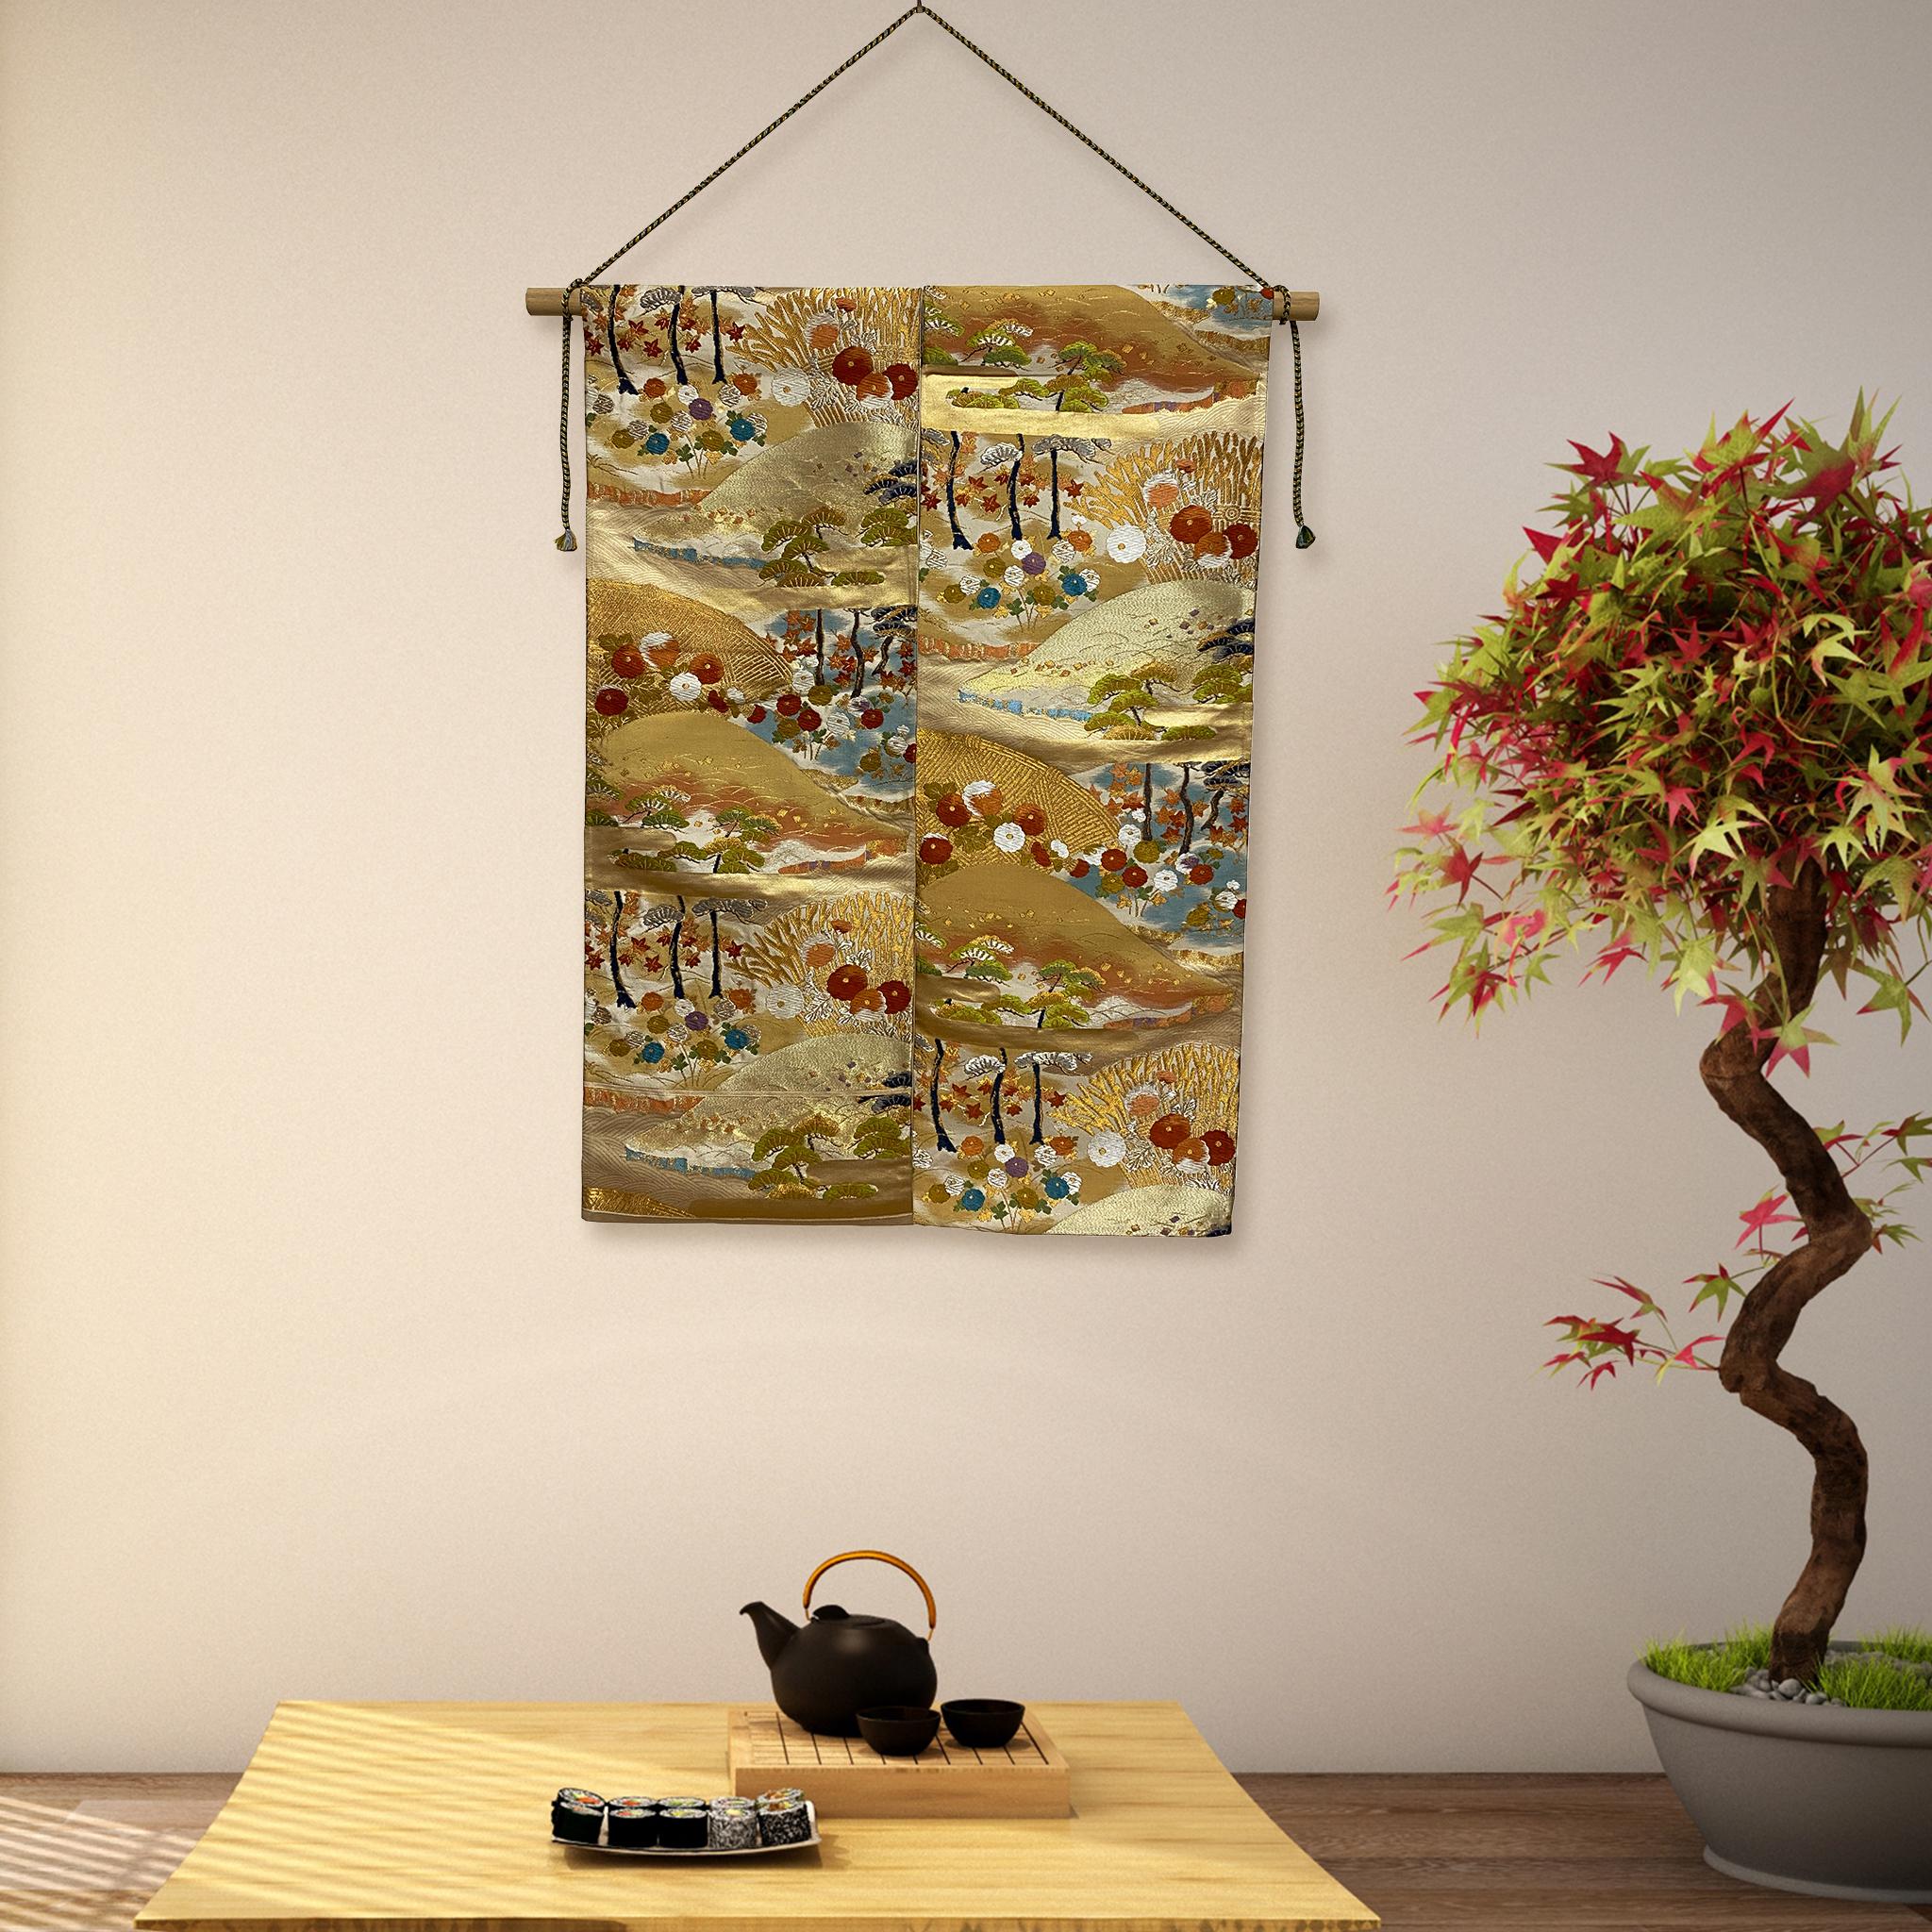 Jardin au bord de la mer par Kimono-Couture

*Art du kimono japonais
*Fait à la main par Kimono-Couture
*Art japonais unique

Cette œuvre est une tapisserie d'obi de kimono de haute qualité fabriquée par des artisans japonais qualifiés et réutilisée